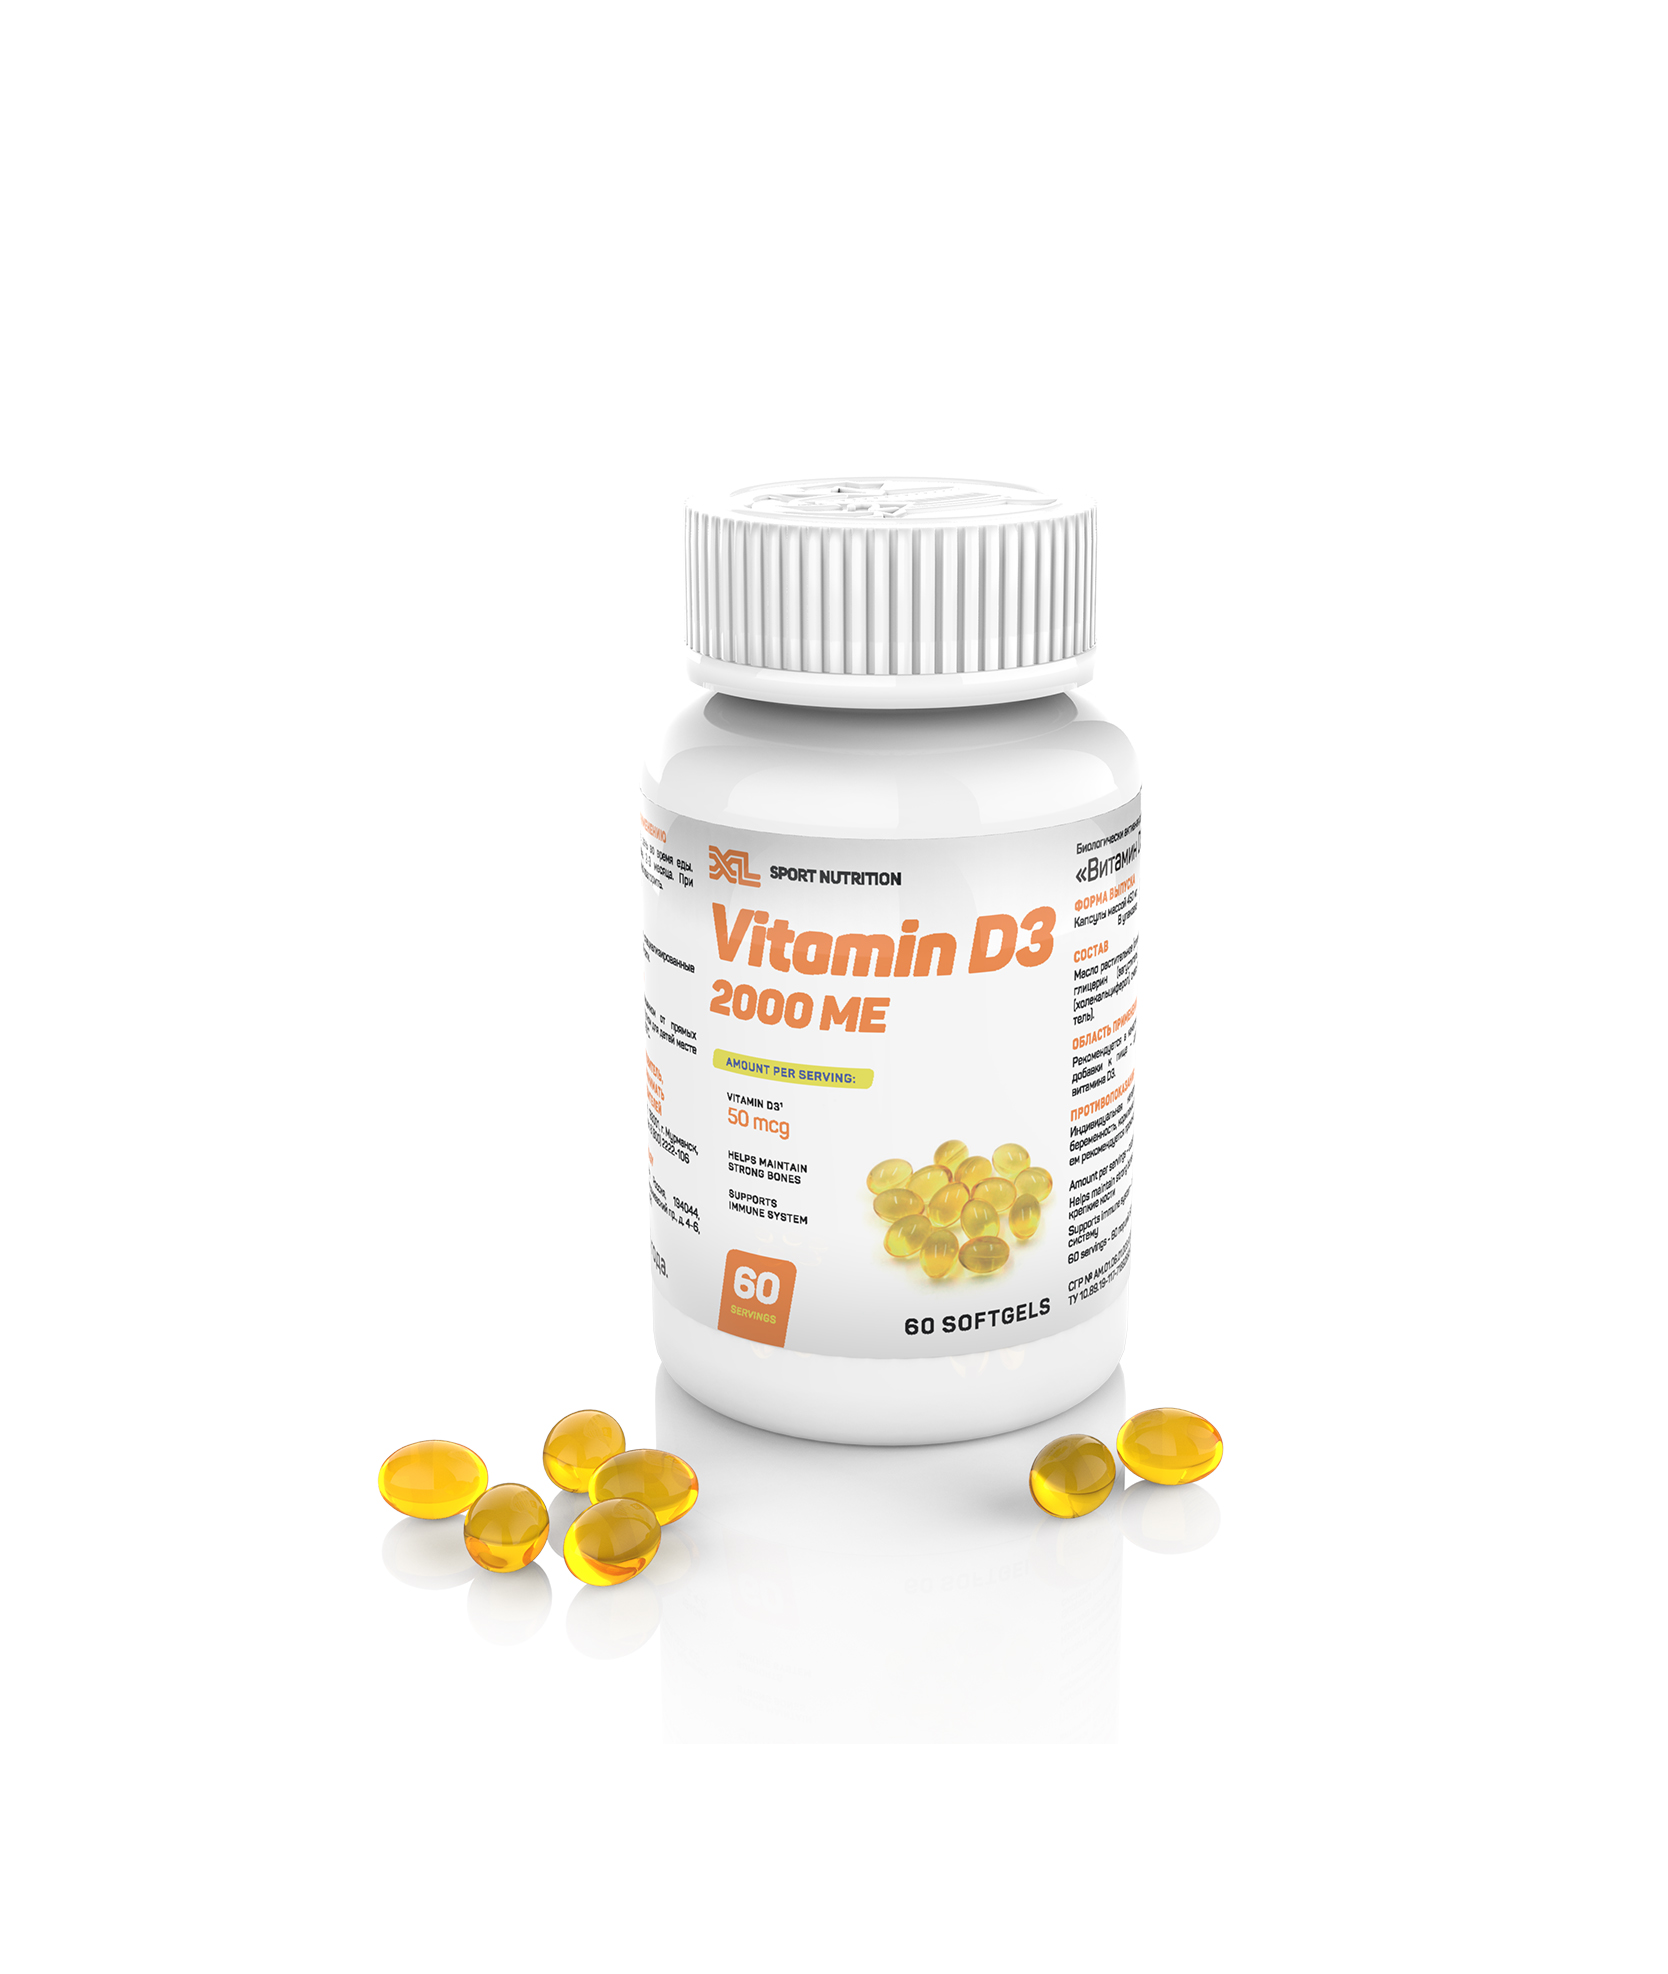 XL Vitamin D3 2000 ME, 60 softgels